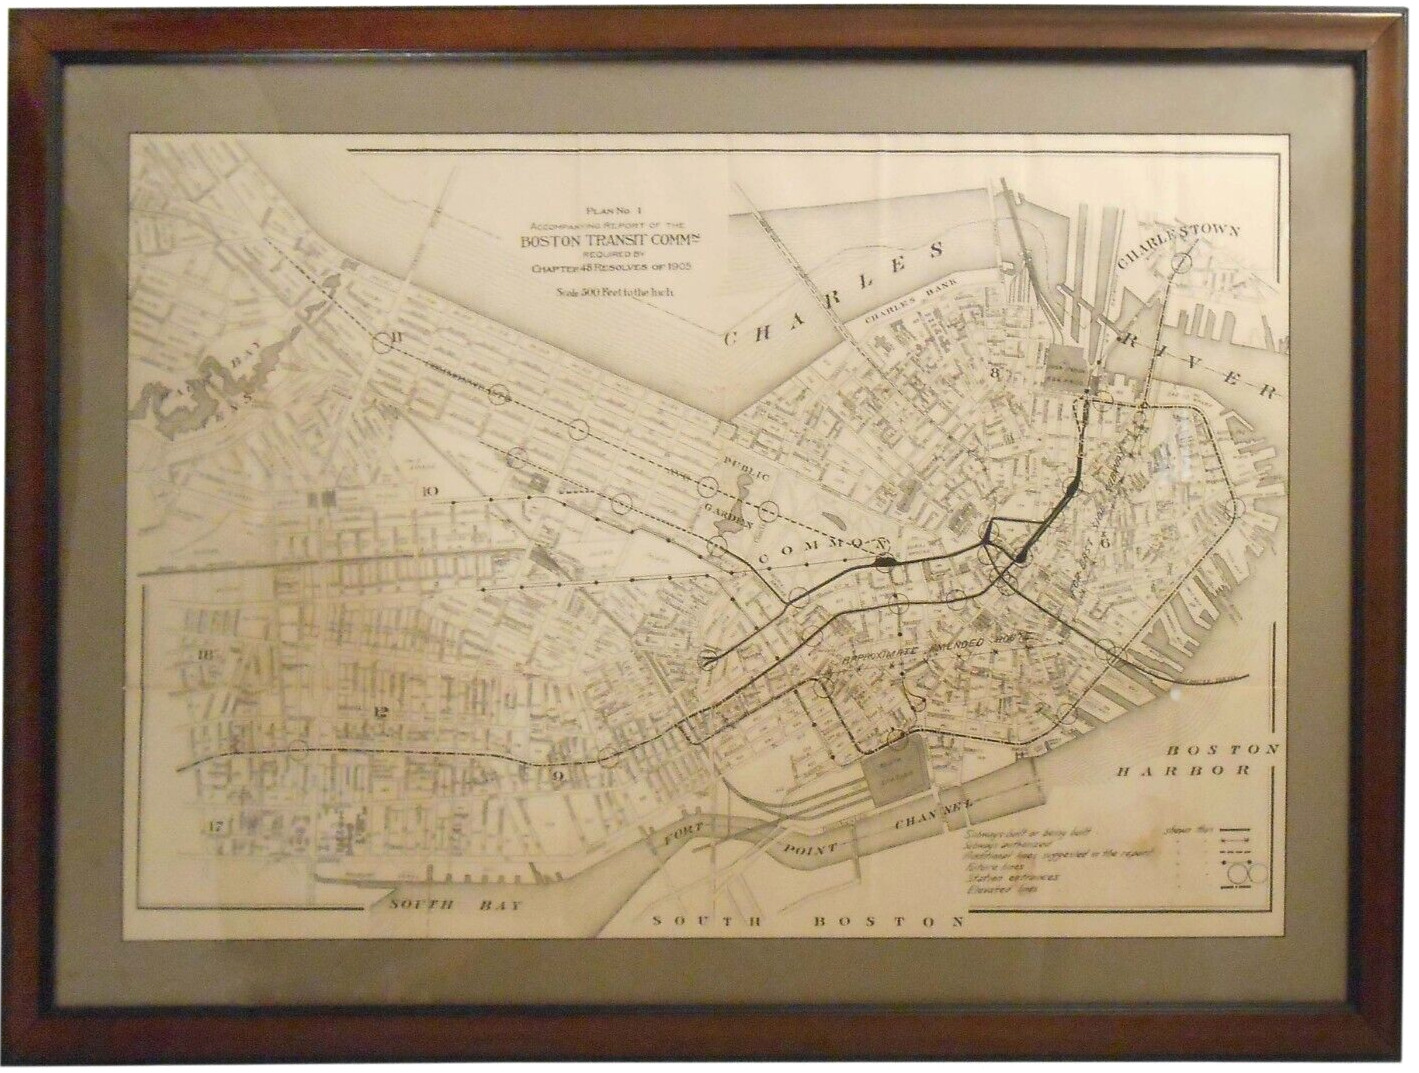 RARE 1905 PLAN #1 ACCMPNYNG REPORT BOSTON TRANSIT COMM, PROPOSED SUBWAY MAP FRMD